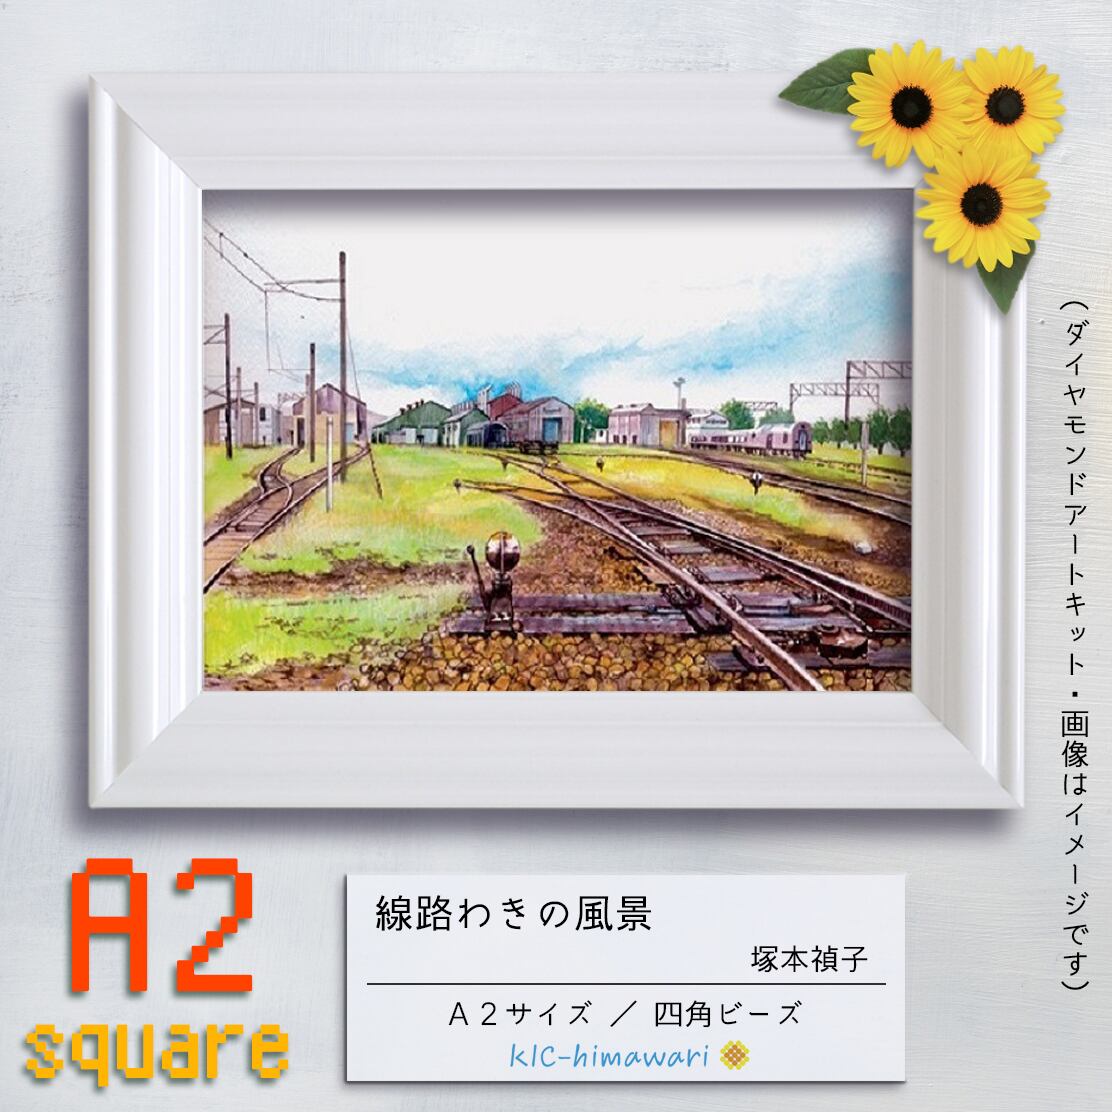 【国内製造】A2s tei-061『線路わきの風景』塚本禎子のダイヤモンドアートキット❀